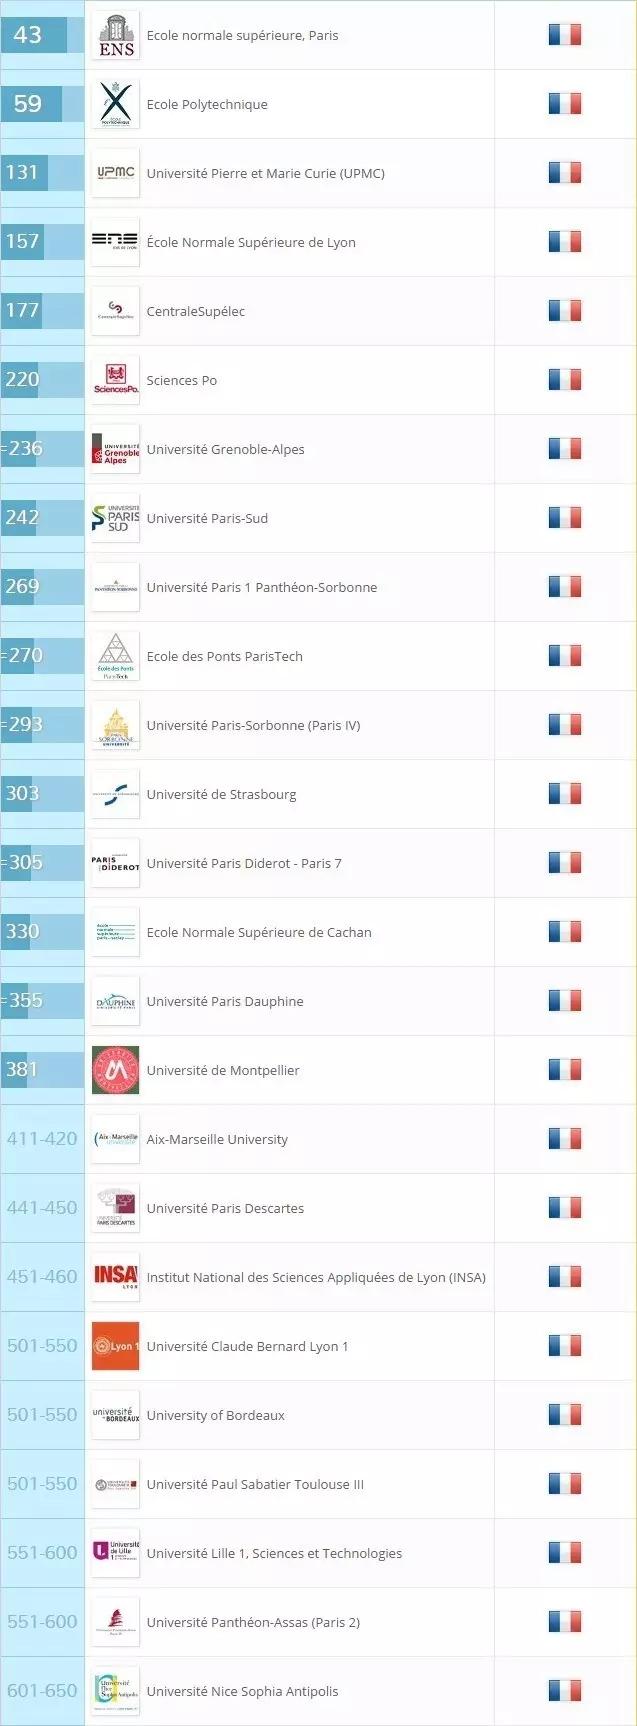 2018QS世界大学排名,为何法国高校排名却不尽